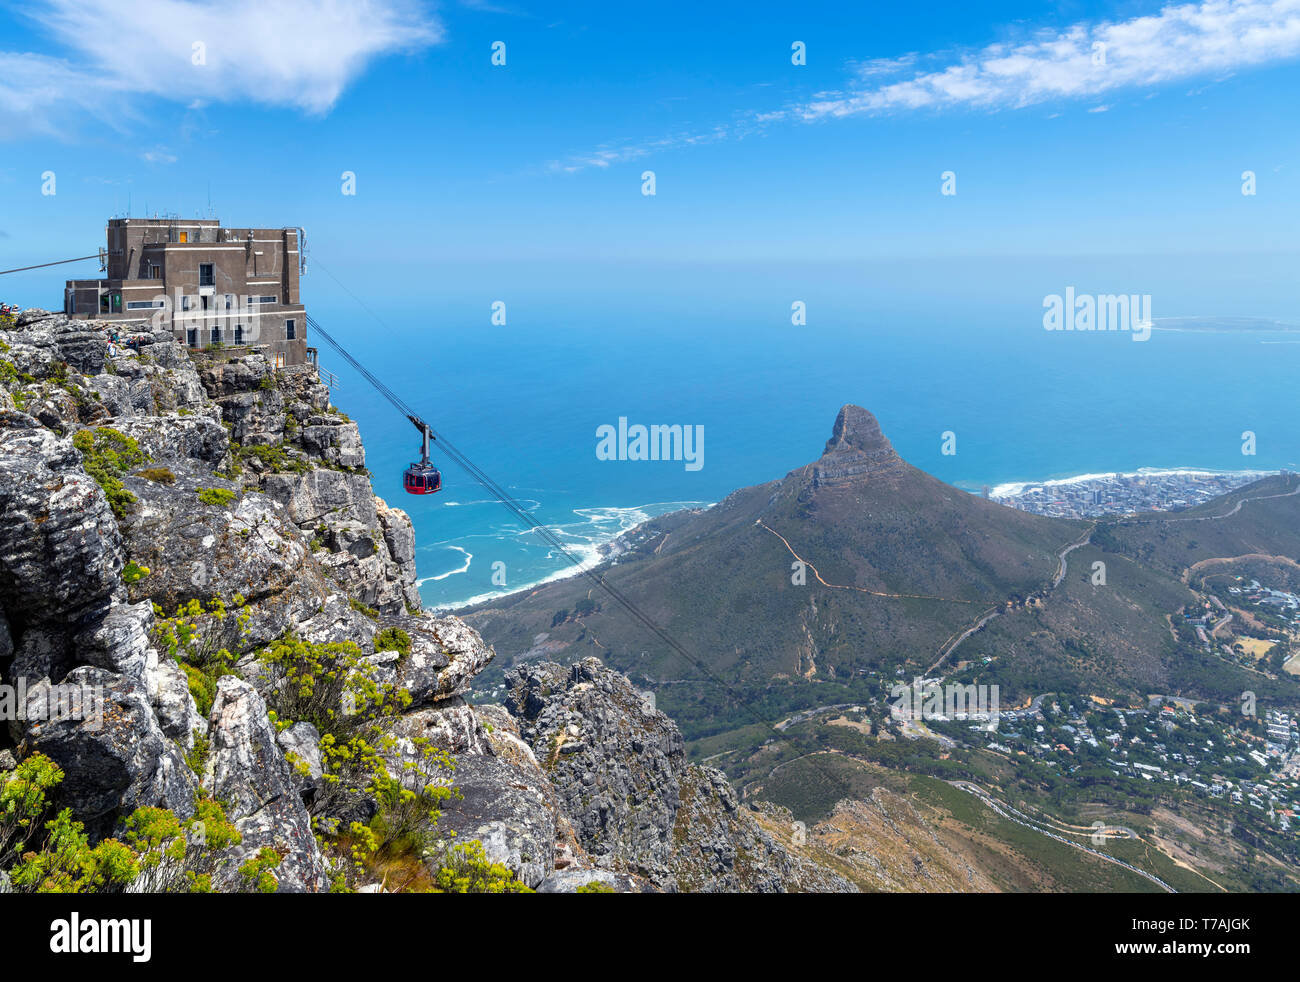 Vue depuis la montagne de la table avec un téléphérique en premier plan et de la tête de lion, Signal Hill et derrière l'île de Robben Island, Cape Town, Afrique du Sud. Banque D'Images